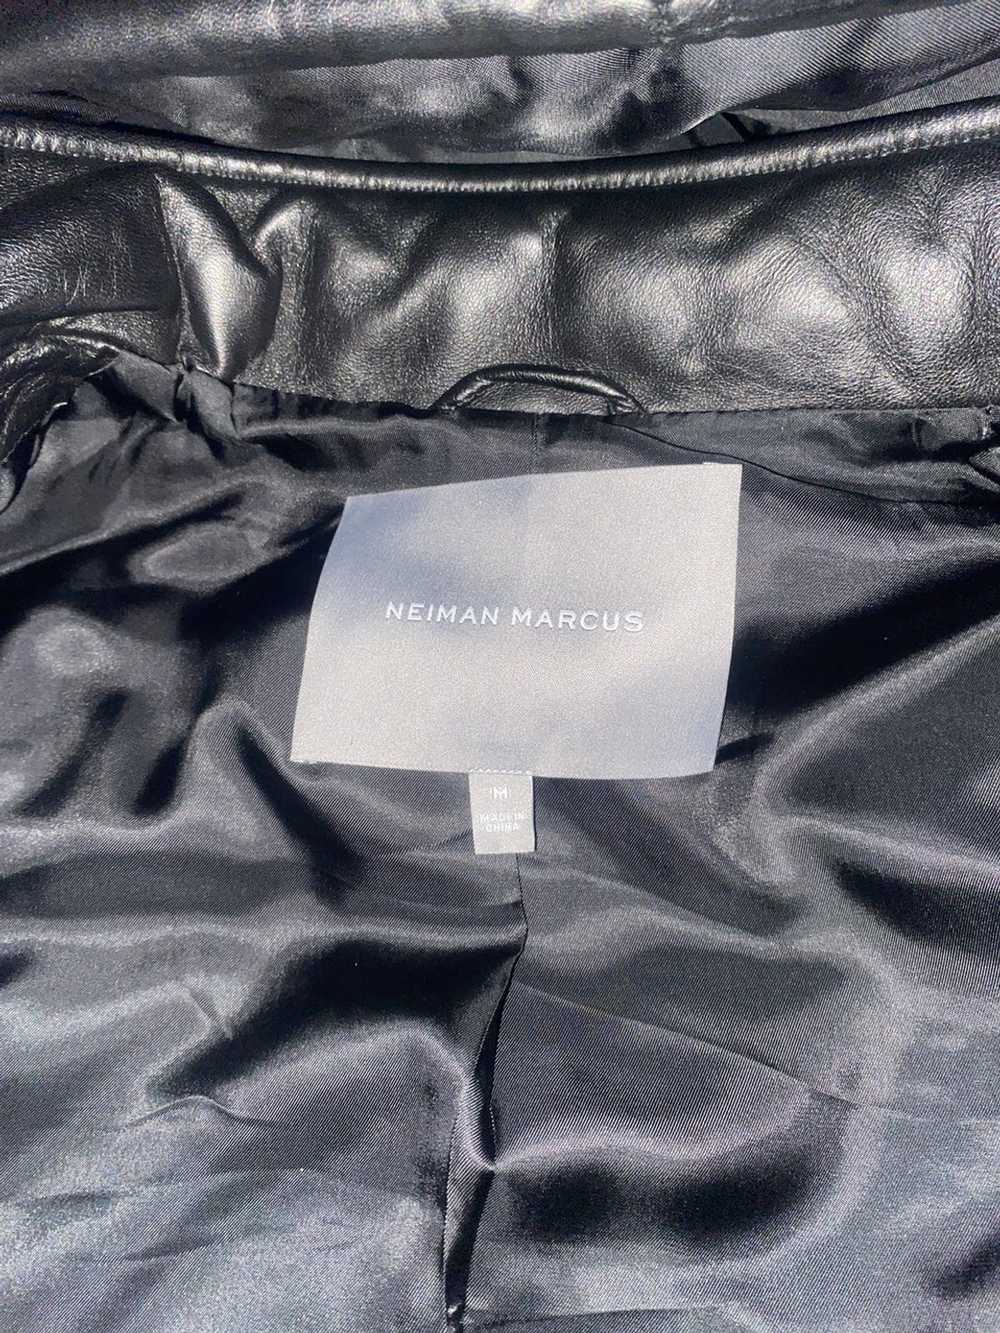 Neiman Marcus Neiman Marcus leather jacket - image 4